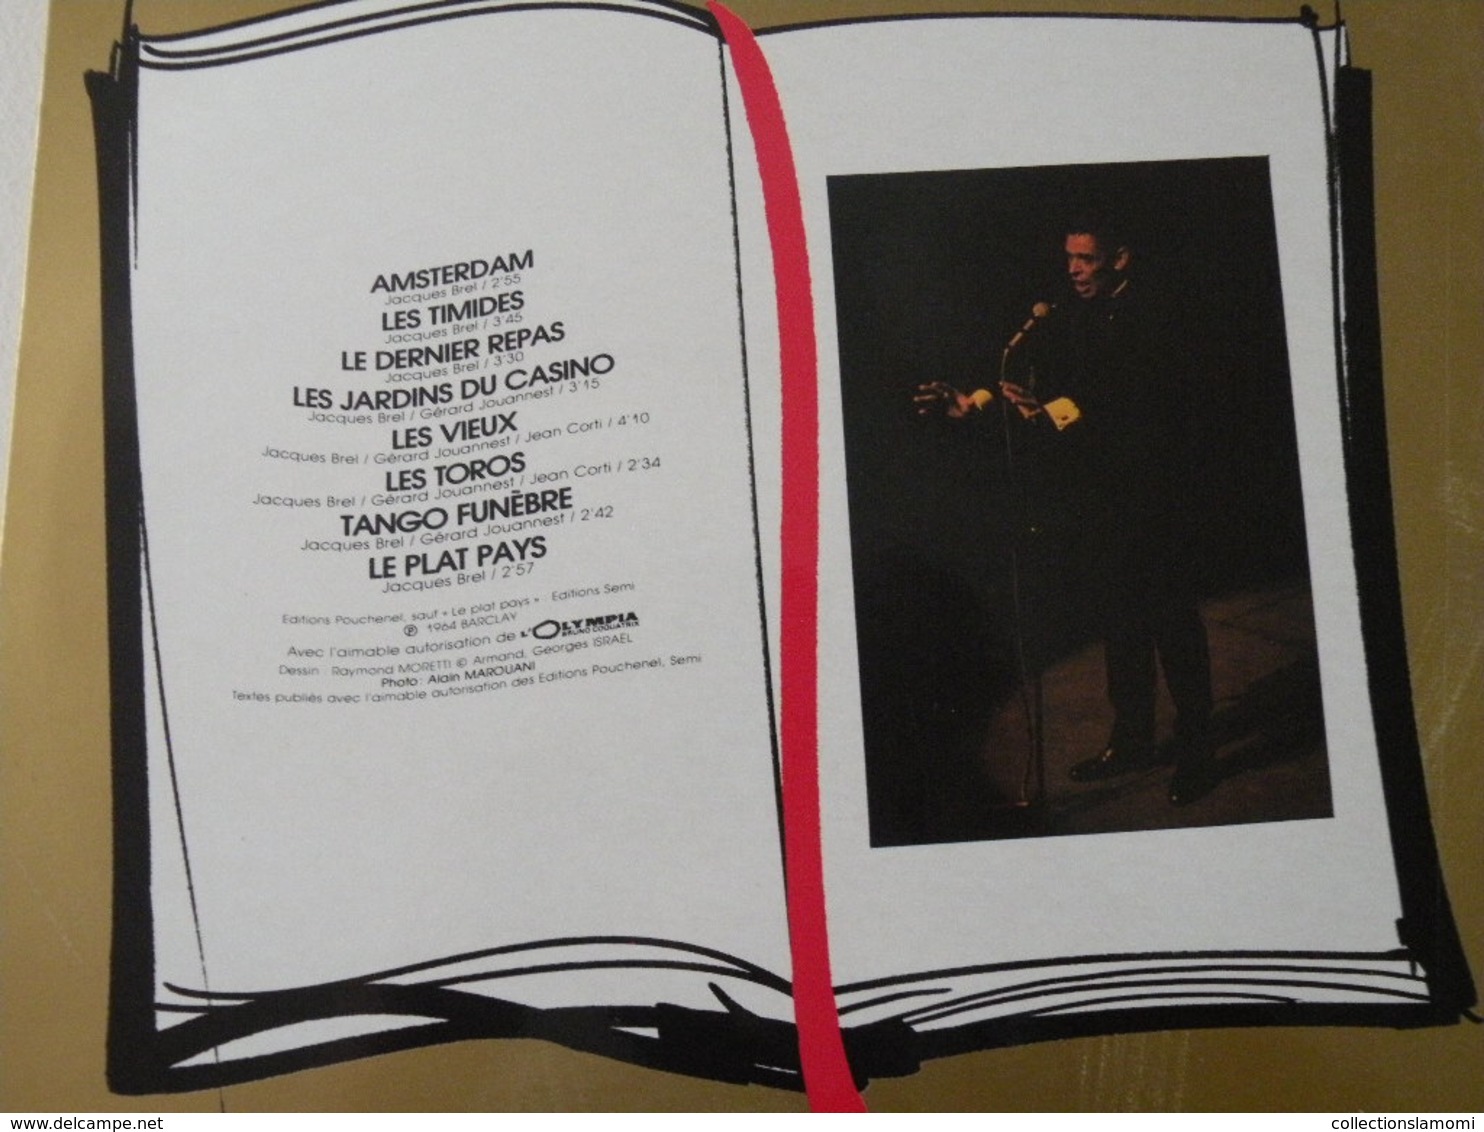 Jacques Brel à l'Olympia en public 1964 -(Titres sur photos)- Vinyle 33 T LP (Barclay)